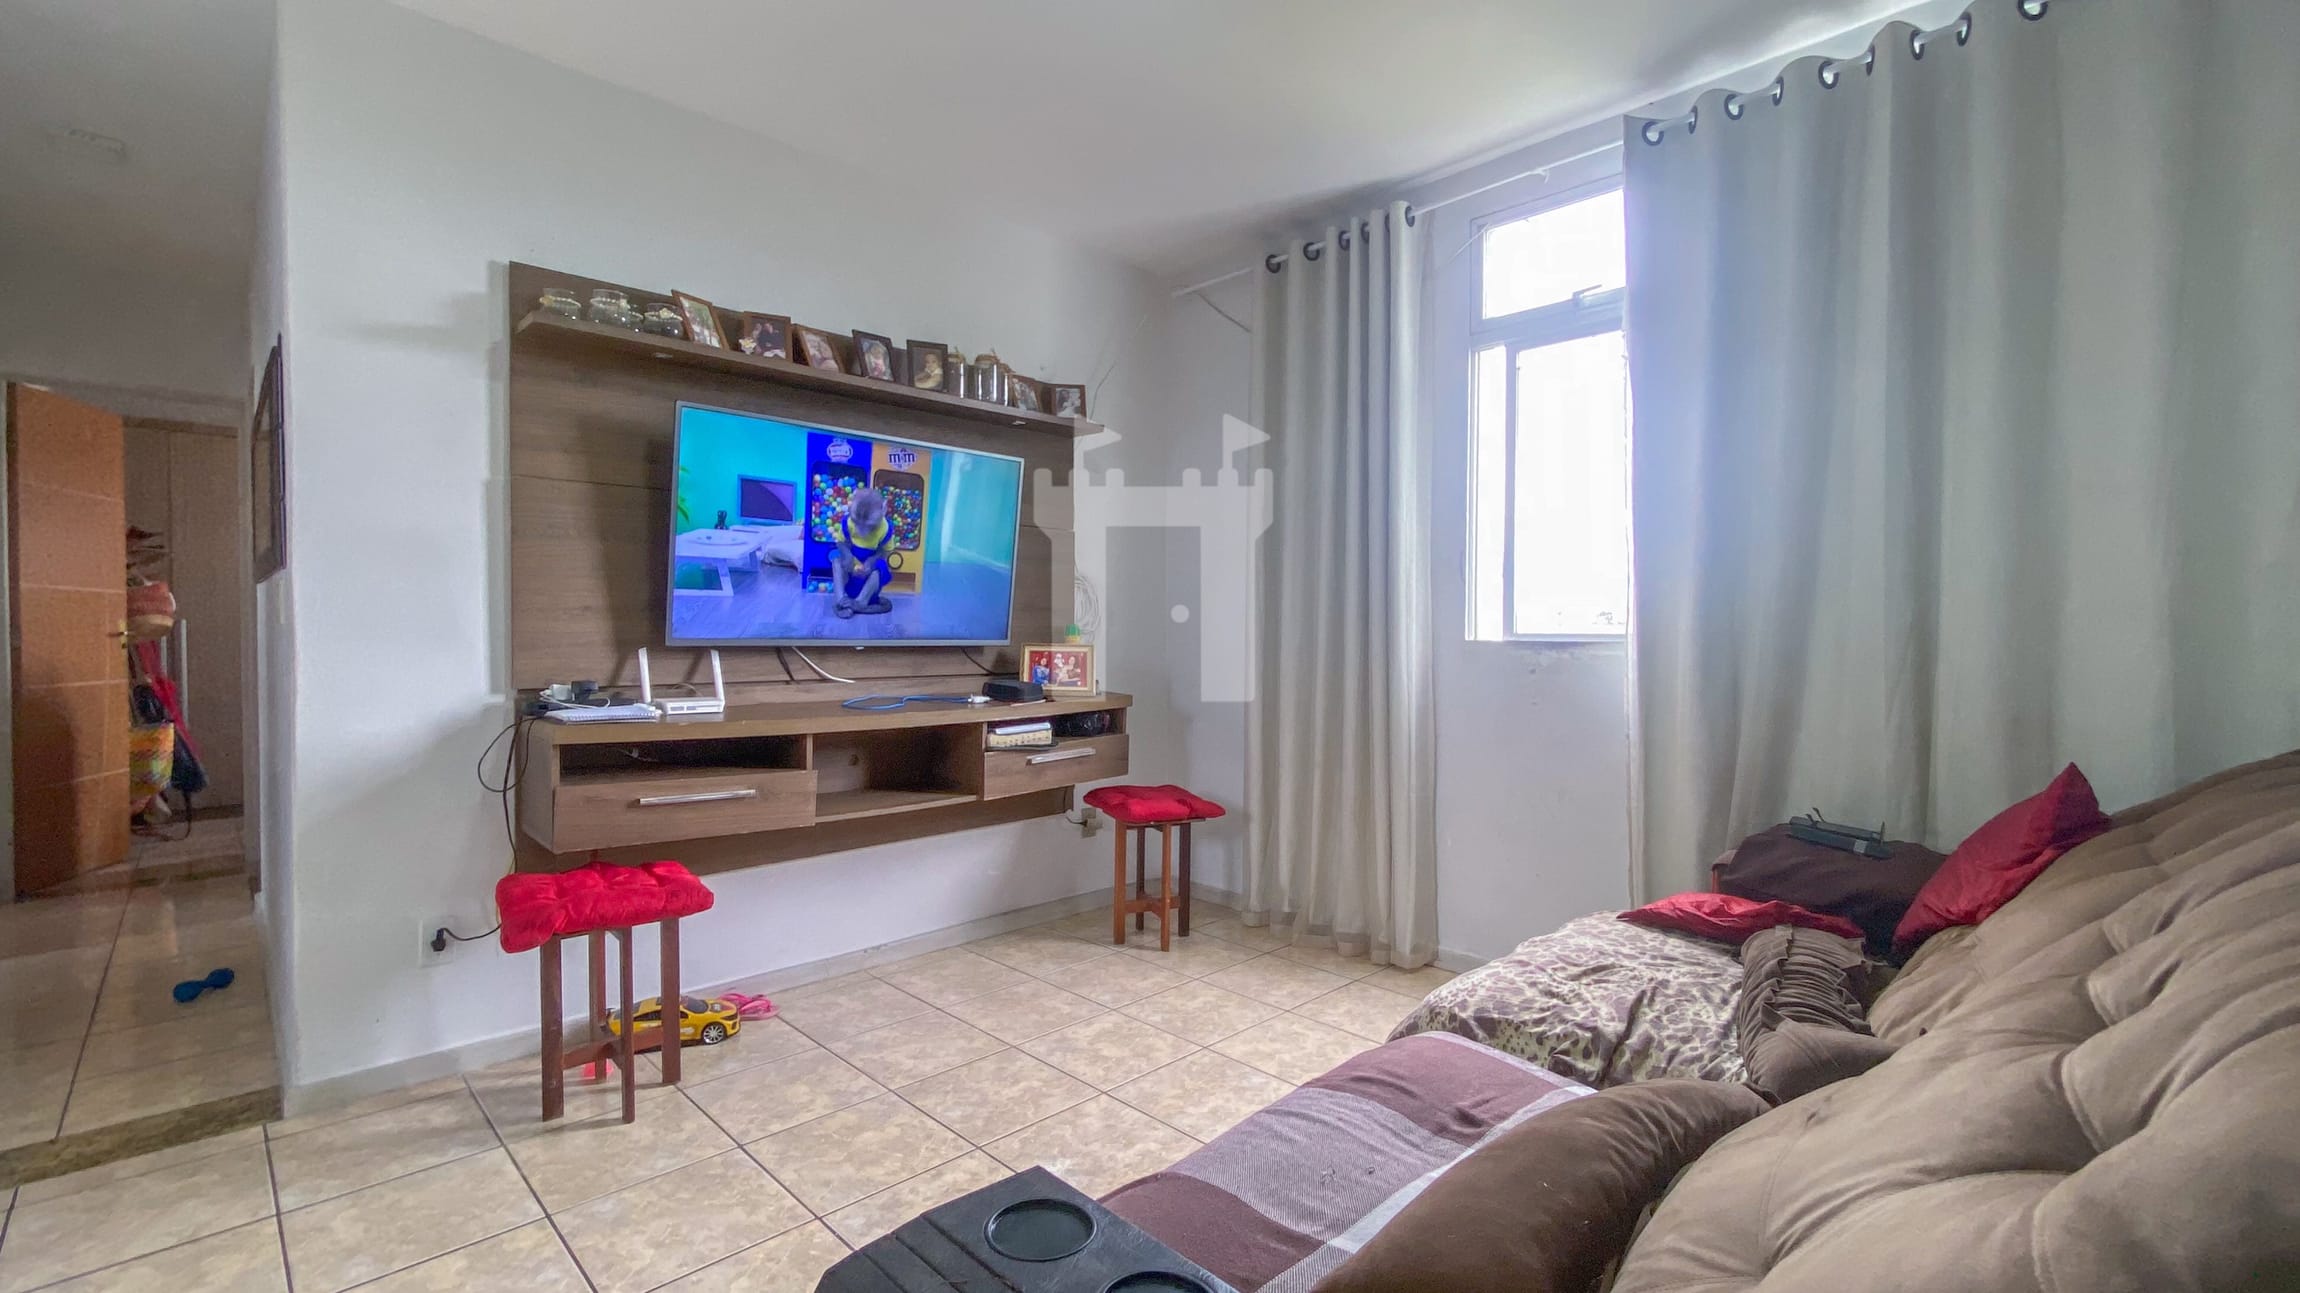 Apartamento em Castelândia, Serra/ES de 60m² 3 quartos à venda por R$ 169.000,00